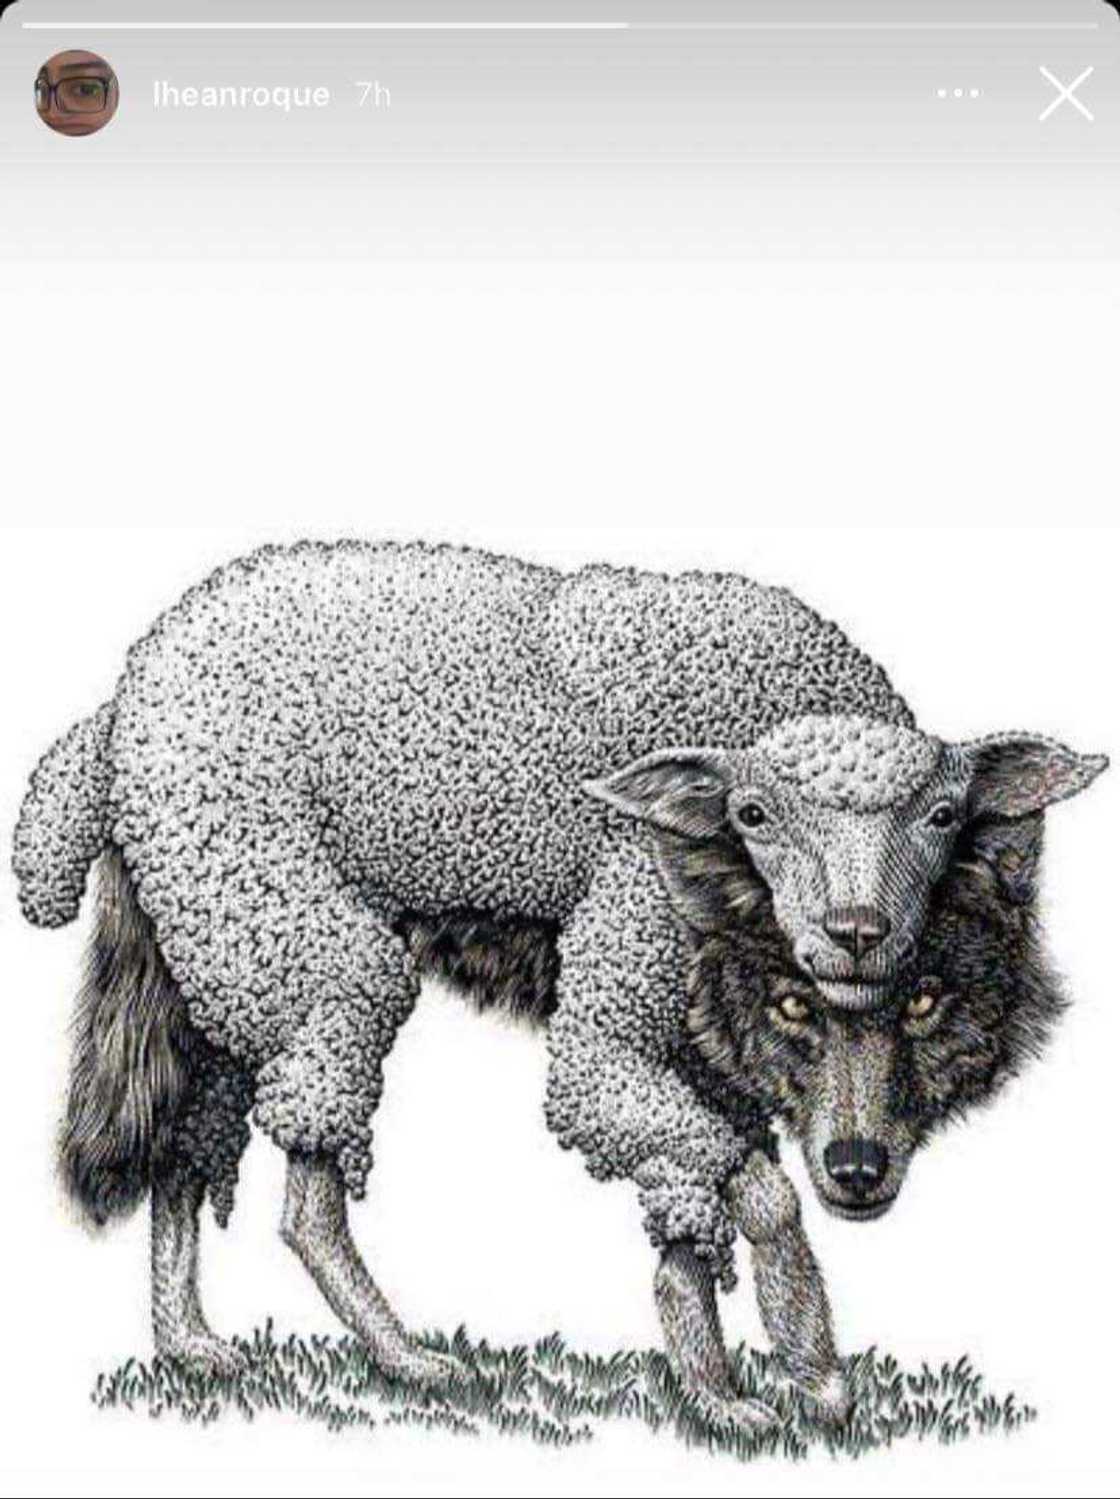 Kapatid ni Dominic Roque, nag-post ng picture na nagpapakita ng 'wolf in sheep's clothing'